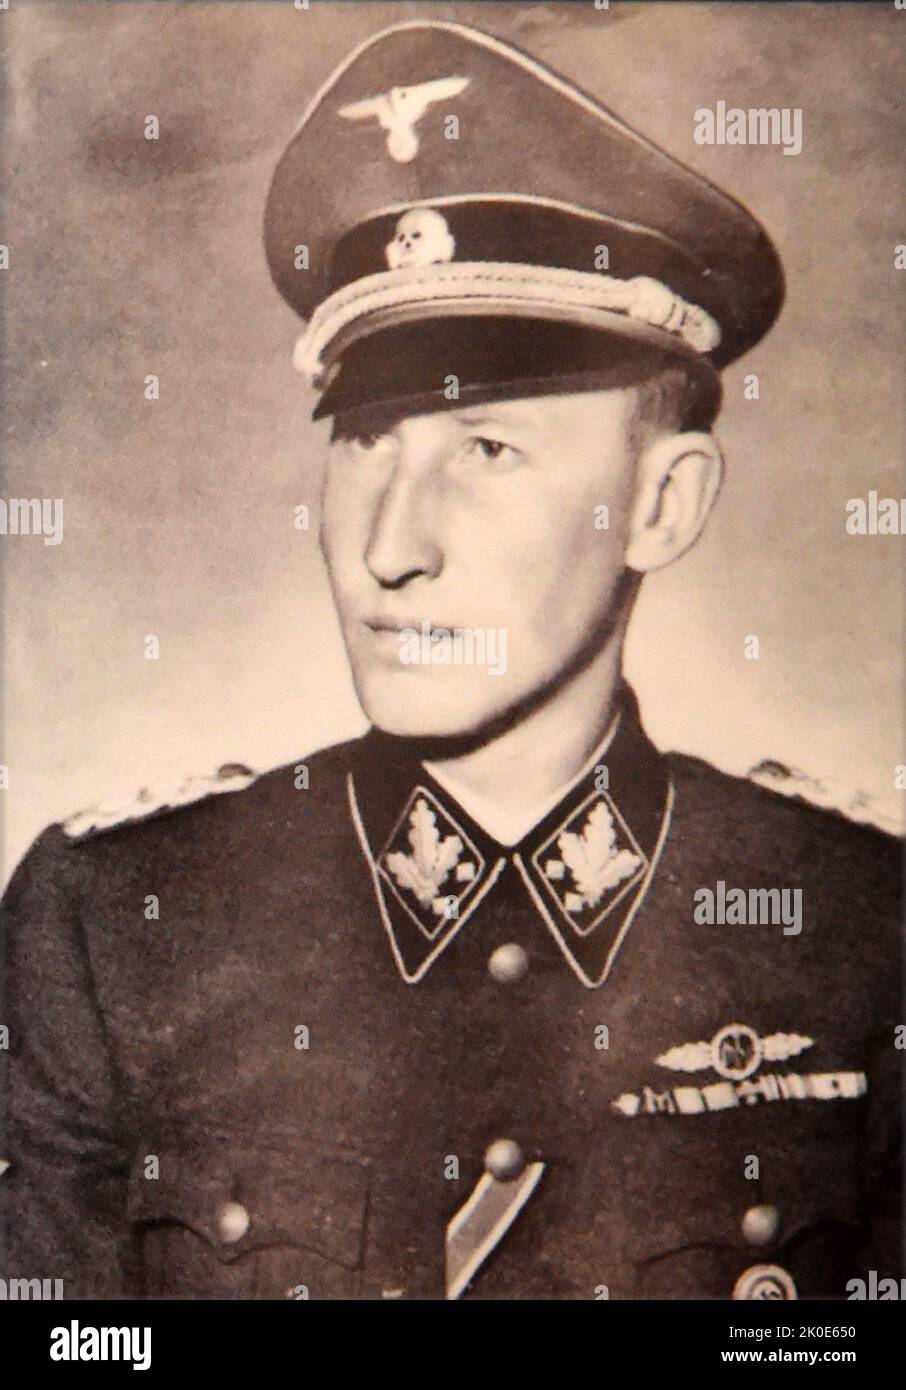 Reinhard Heydrich (1904 - 1942) deutscher SS- und Polizeibeamter während der NS-Zeit und Hauptarchitekt des Holocaust. Er war Leiter des Reichssicherheitshauptamtes. Er diente als Präsident der Internationalen Kriminalpolizei-Kommission (ICPC, später bekannt als Interpol) und leitete die Wannsee-Konferenz im Januar 1942, die die Pläne für die "Endlösung der jüdischen Frage" formalisierte - die Deportation und den Völkermord an allen Juden im deutsch besetzten Europa. Stockfoto